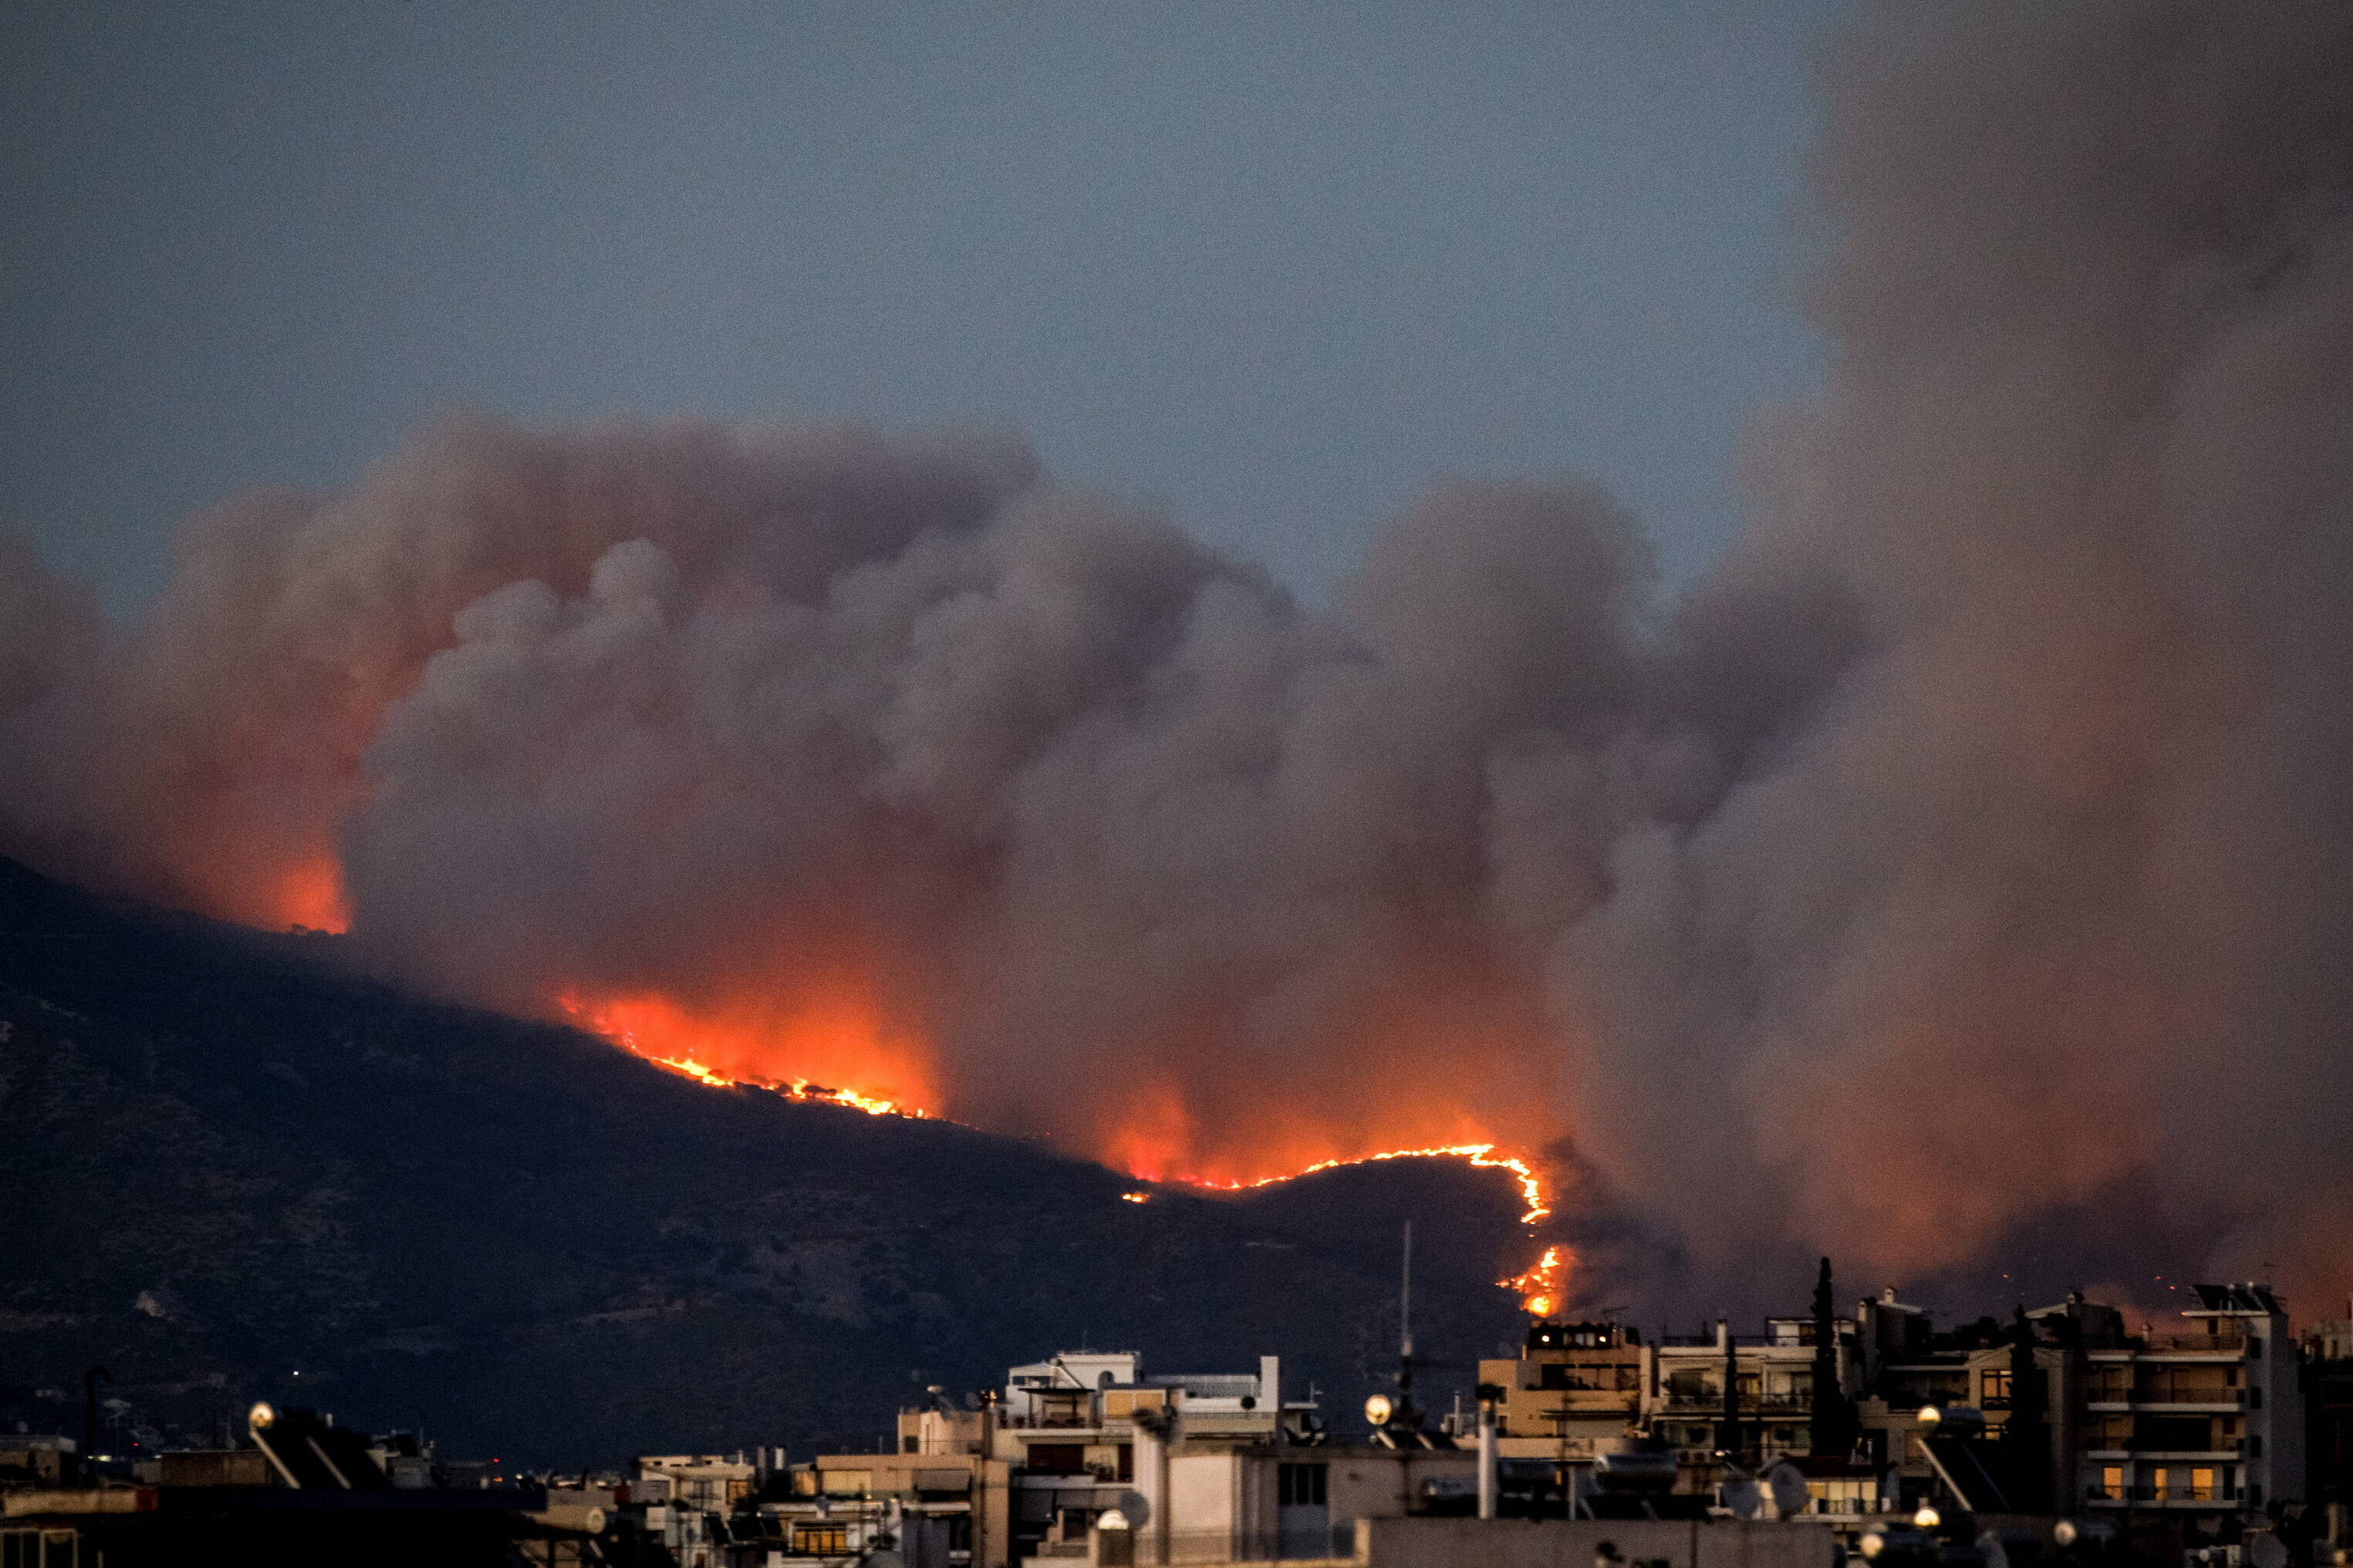 Anschlag! Bombenexplosion erschüttert Athen - Griechische Hauptstadt unter Schock!